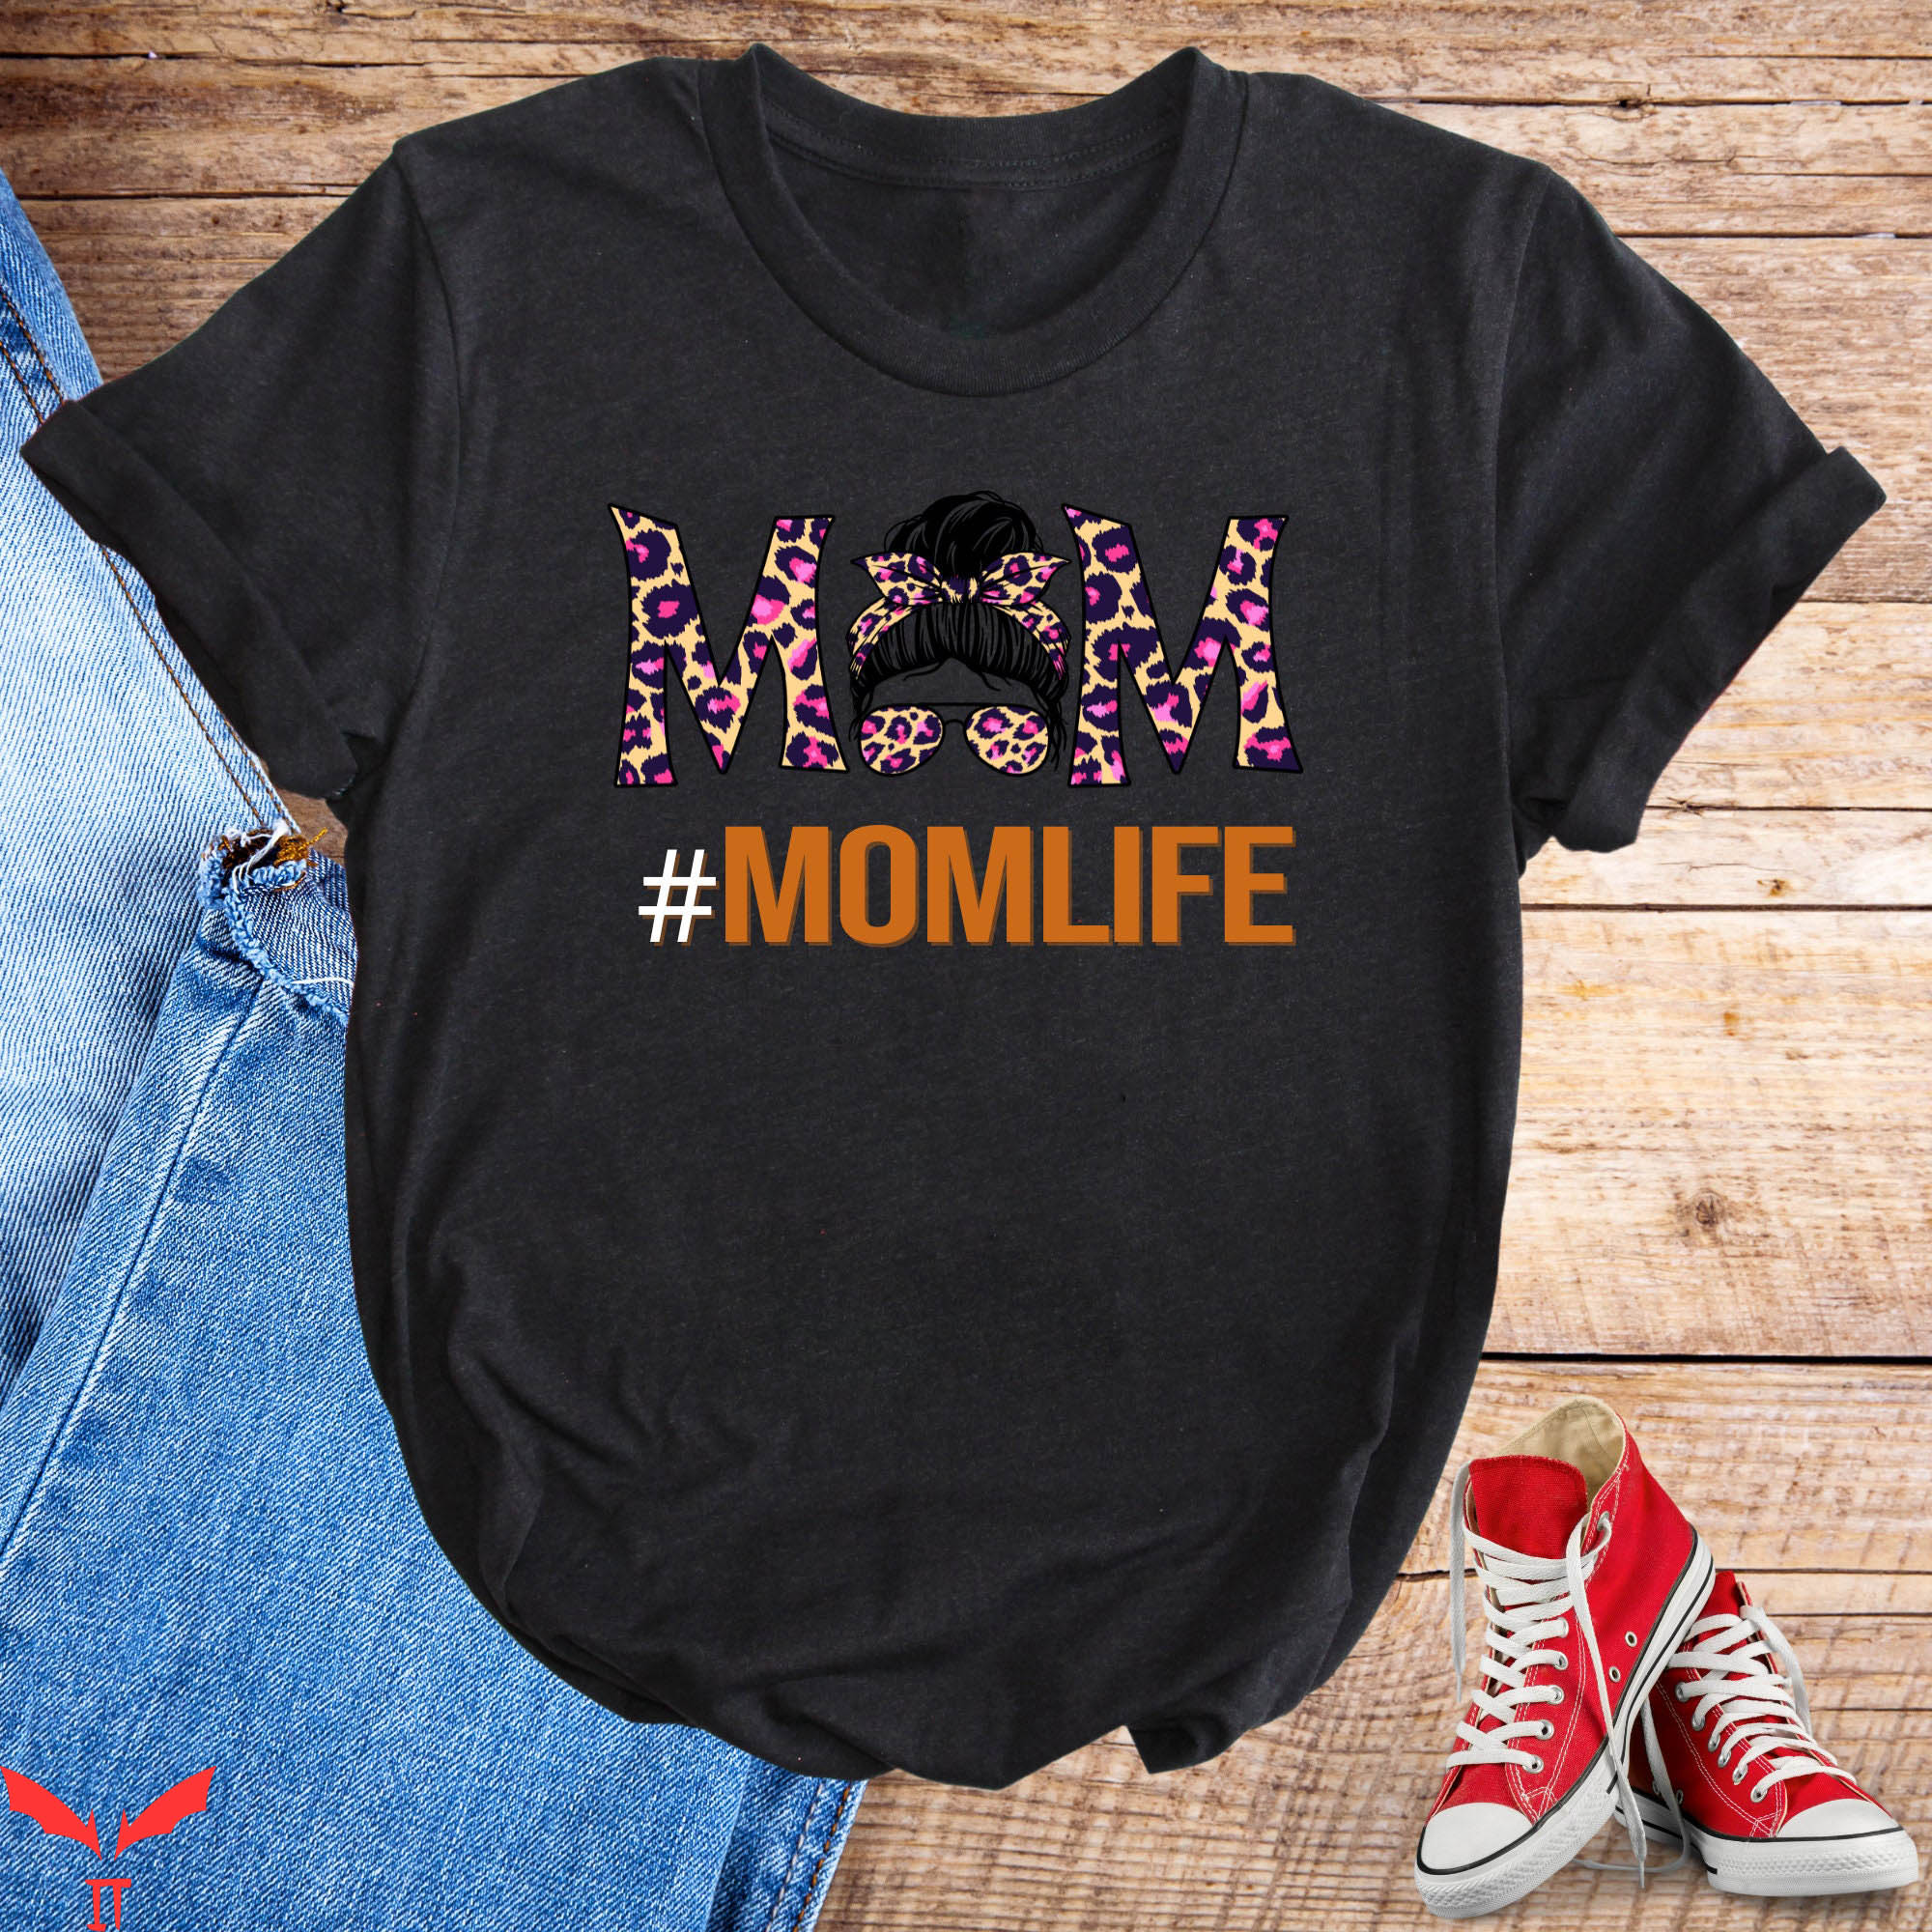 Mom Life T-Shirt Messy Bun Hashtag Cheetah Mom Tee